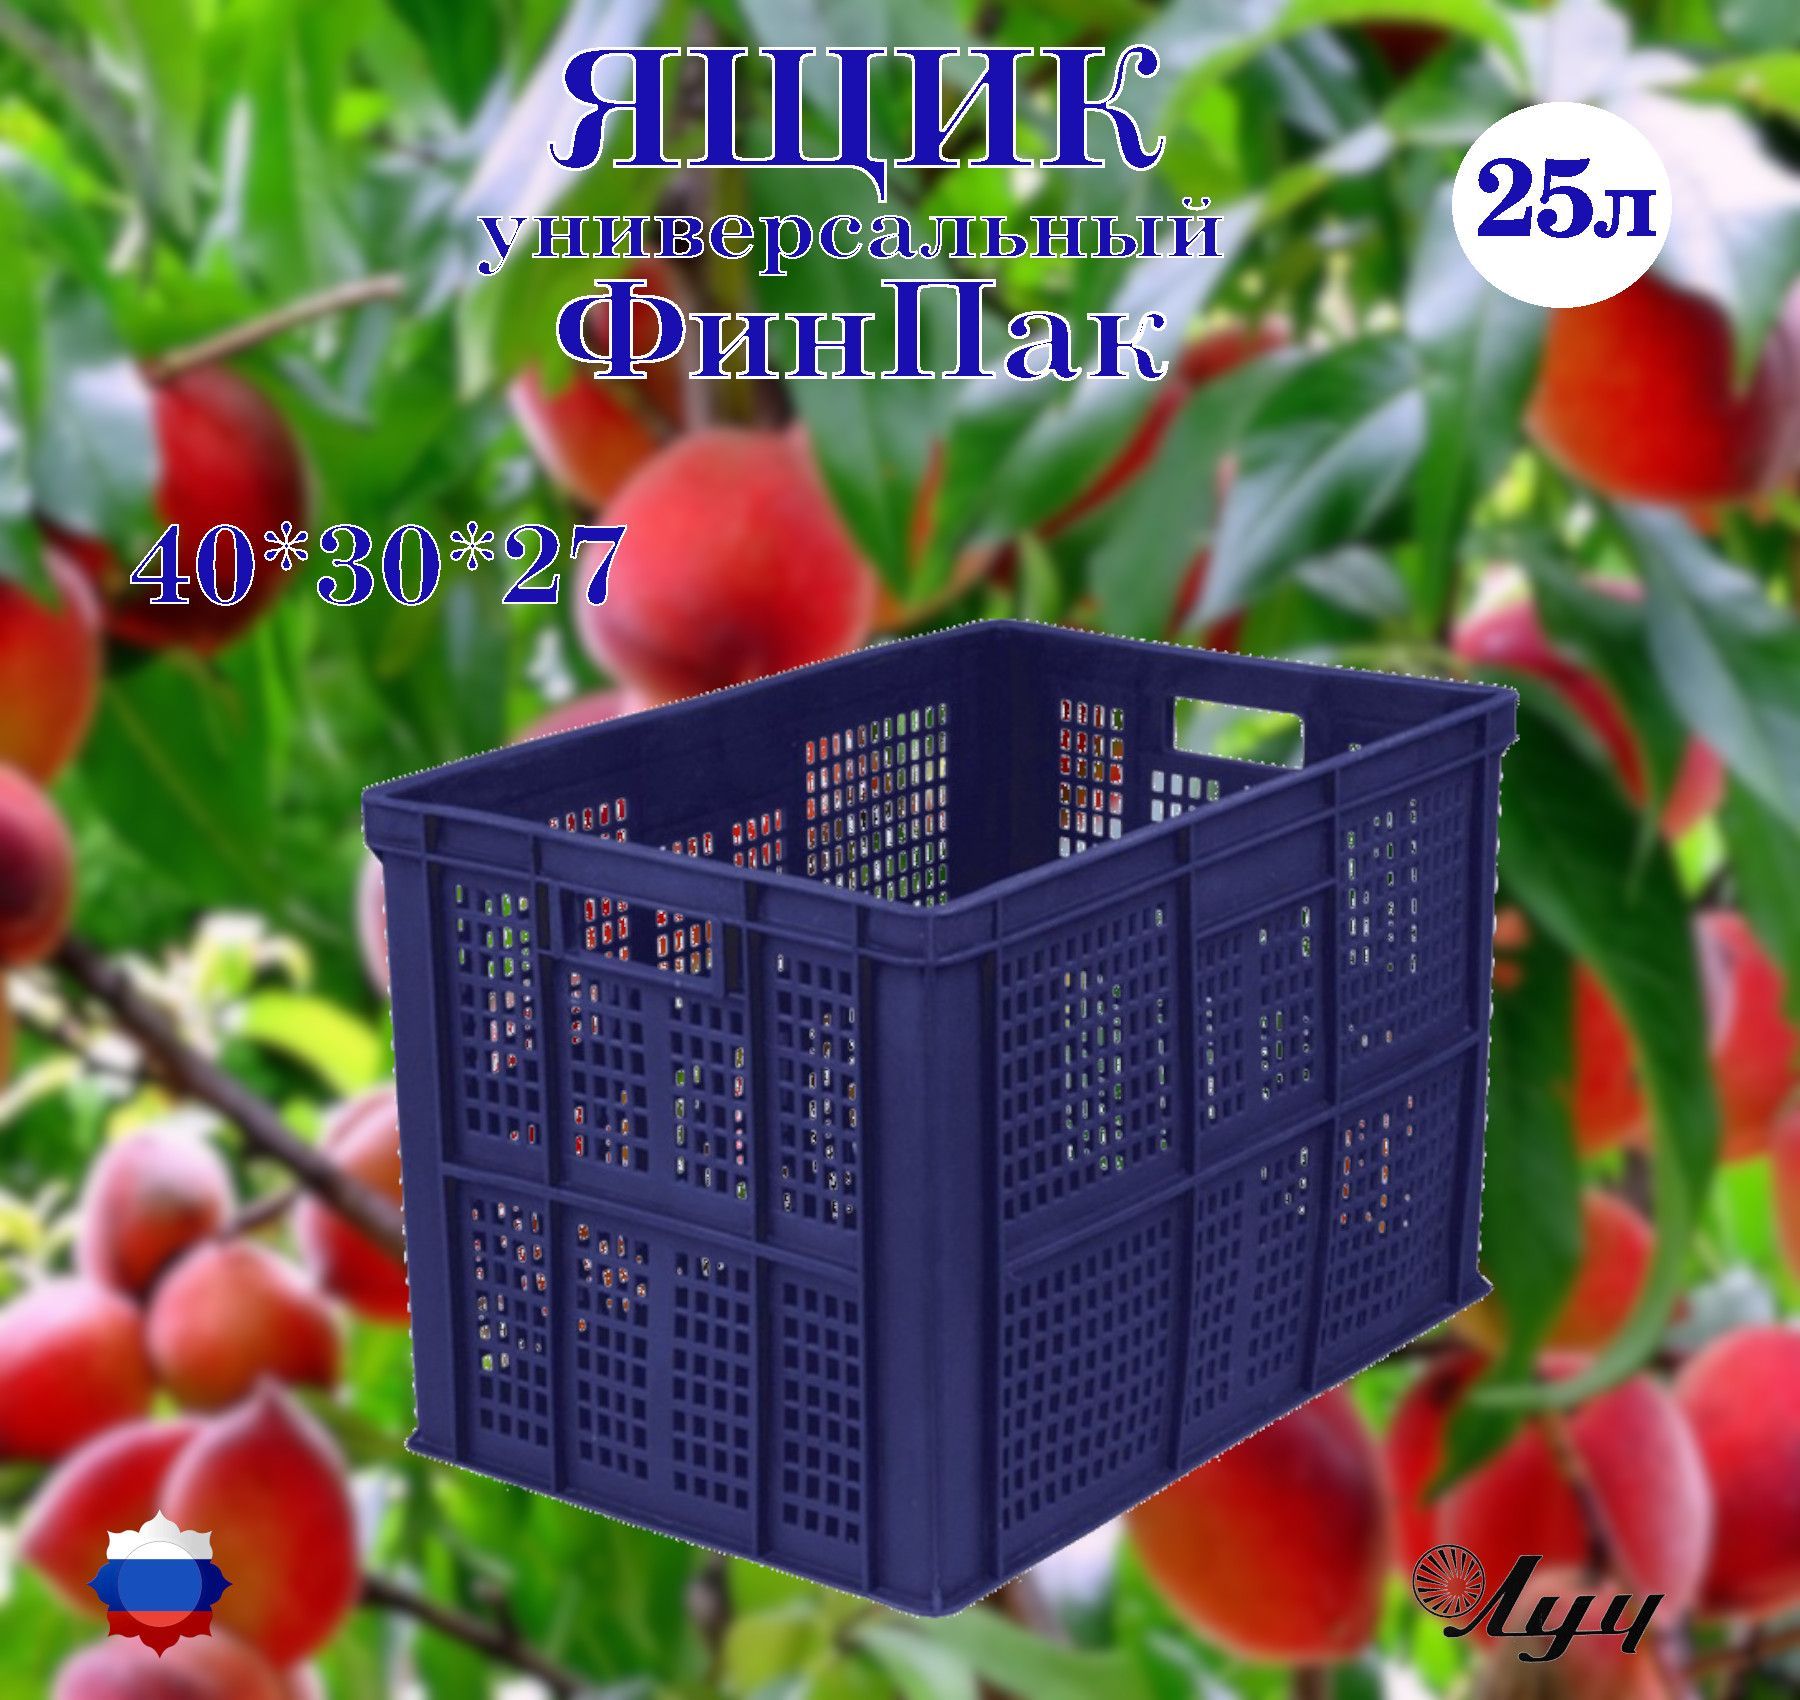 ЯщикФинпакуниверсальный,частичноперфорированный,штабелируемый400*300*263ммдляхраненияитранспортировкиовощей,фруктов,мяснойимолочнойпродукции